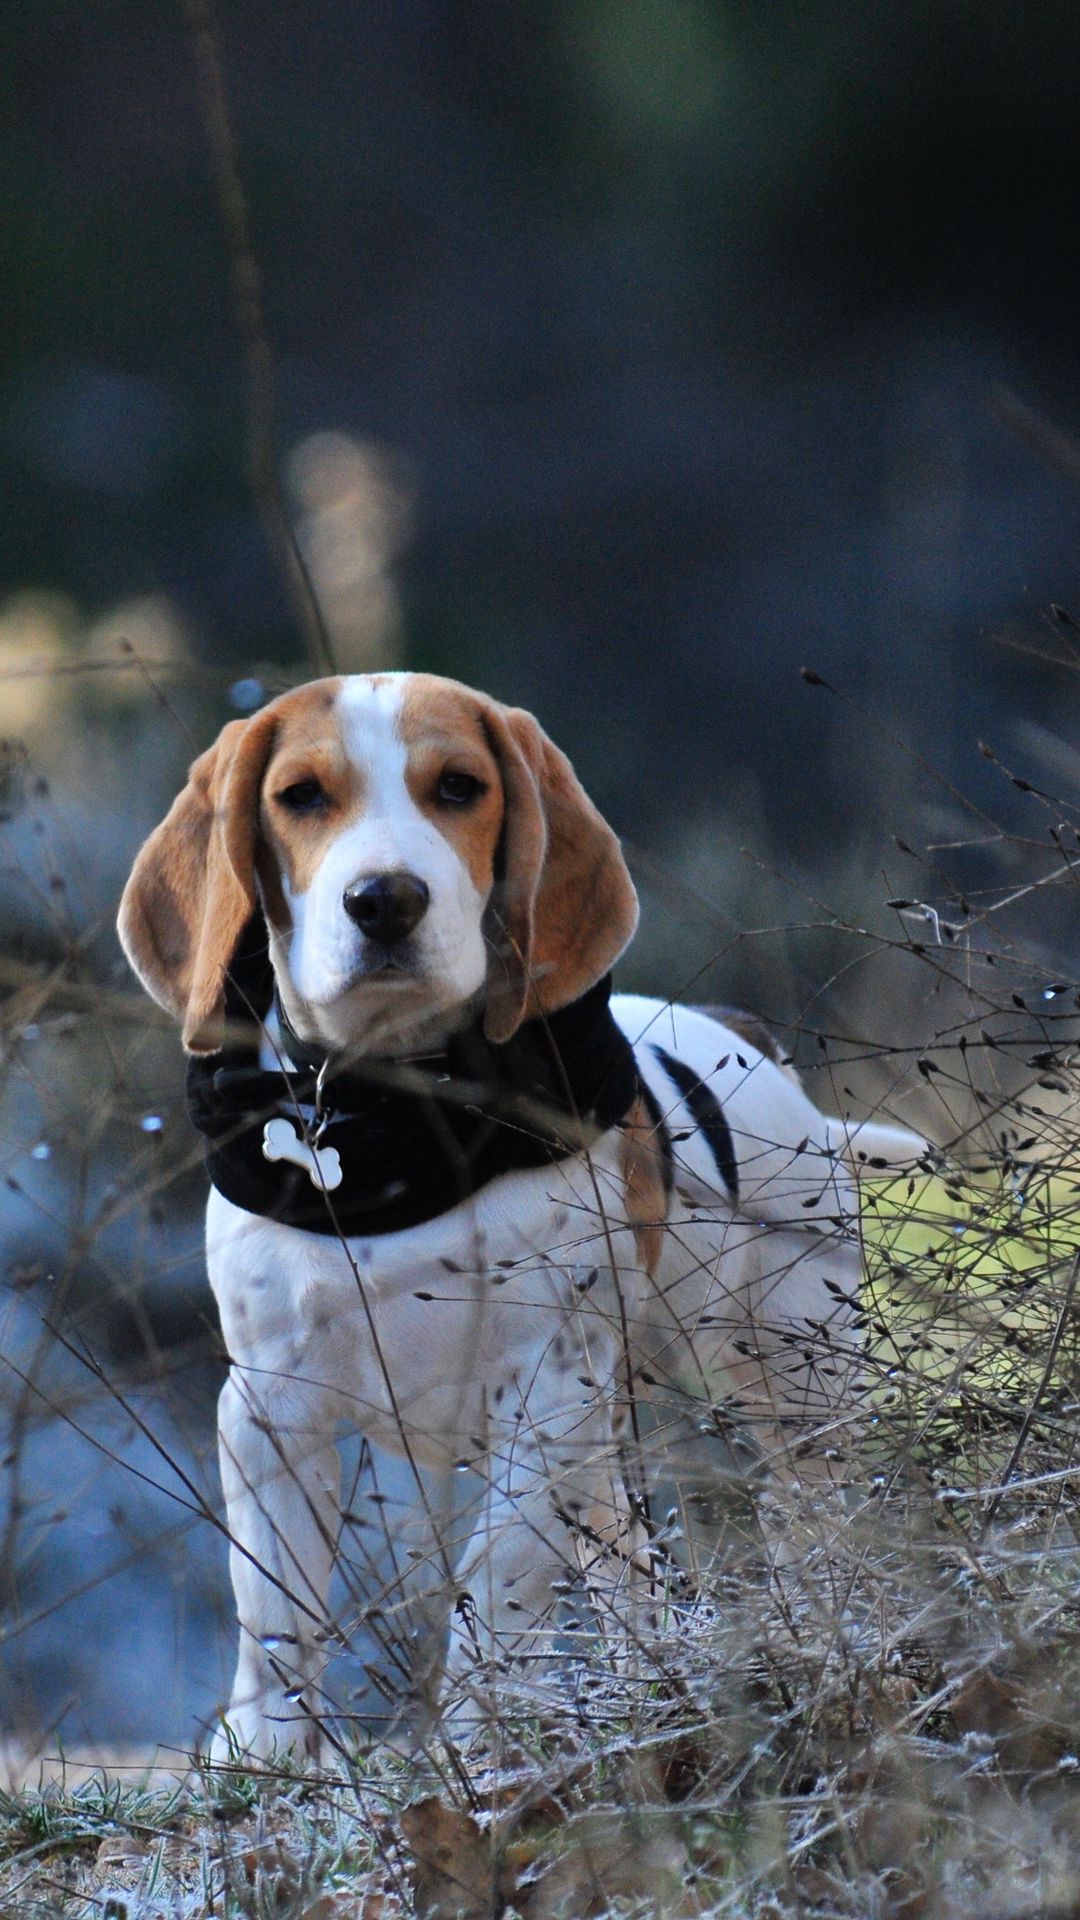 Beagle: Chú chó Beagle là một trong những giống chó thân thiện và đáng yêu nhất. Hình ảnh của chú chó này khiến chúng ta thích thú và cảm thấy vui vẻ. Hãy xem hình ảnh của chú chó Beagle để được chìm đắm trong vẻ đẹp ngọt ngào của một chú chó đáng yêu.